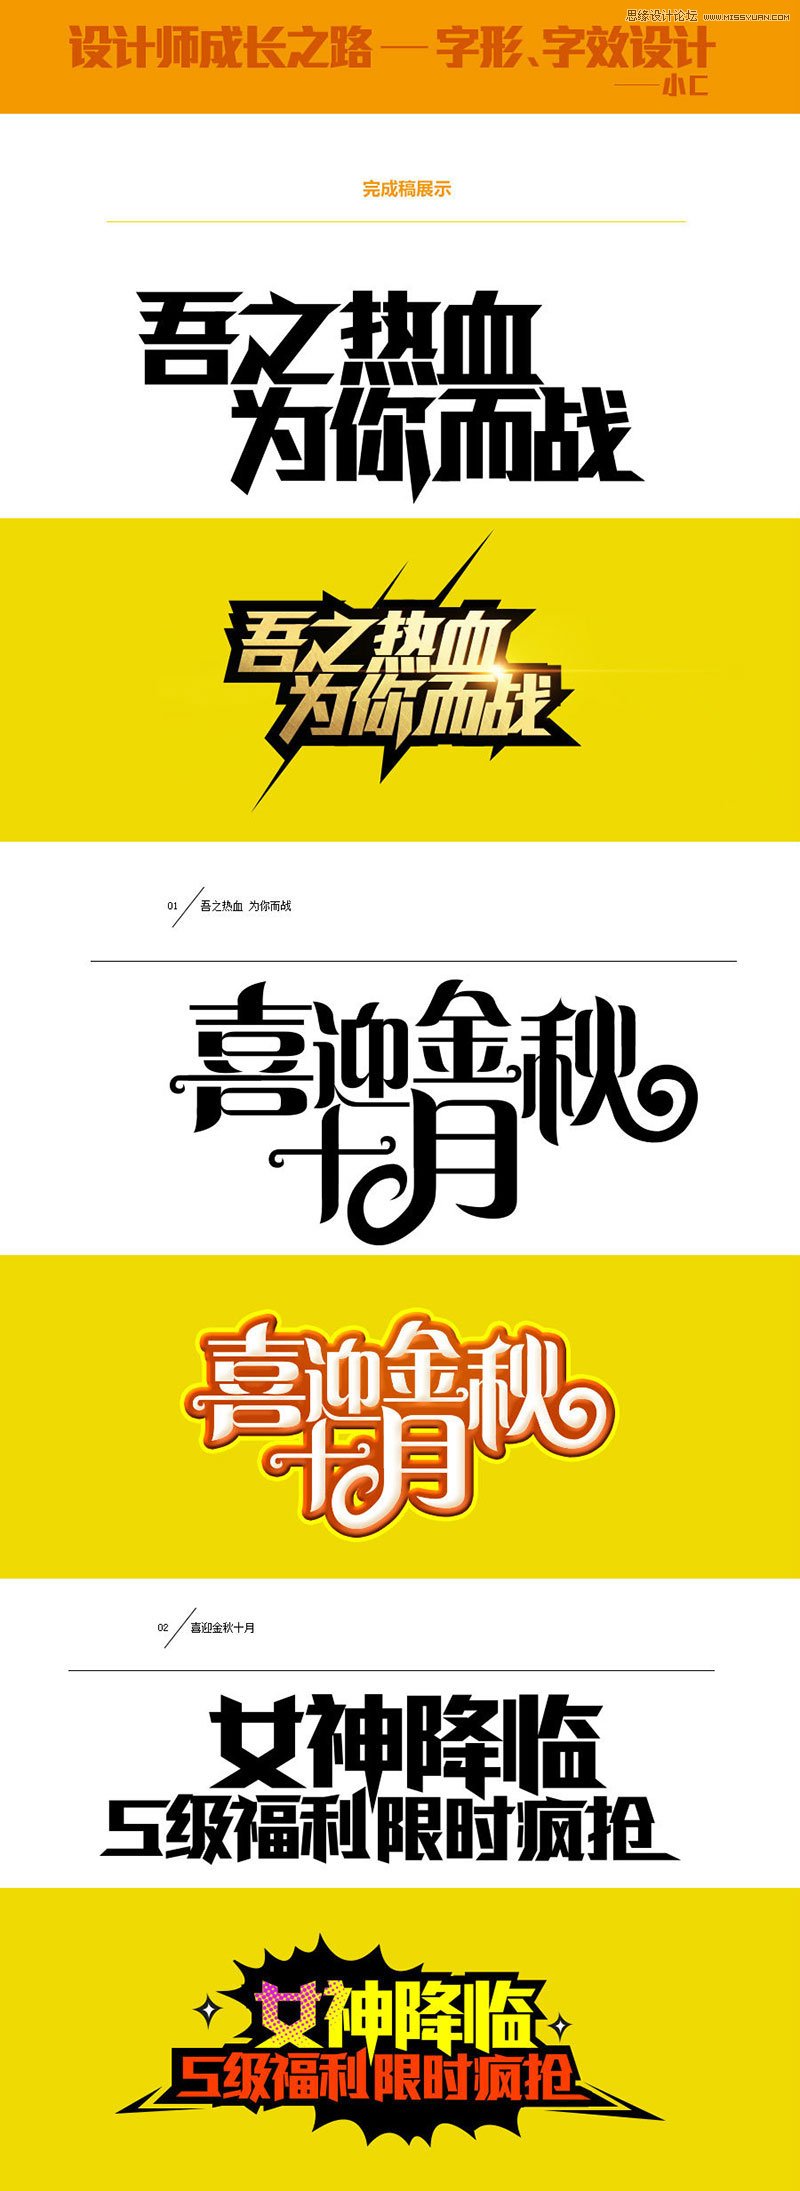 中文海報字體設計心得技巧 三聯